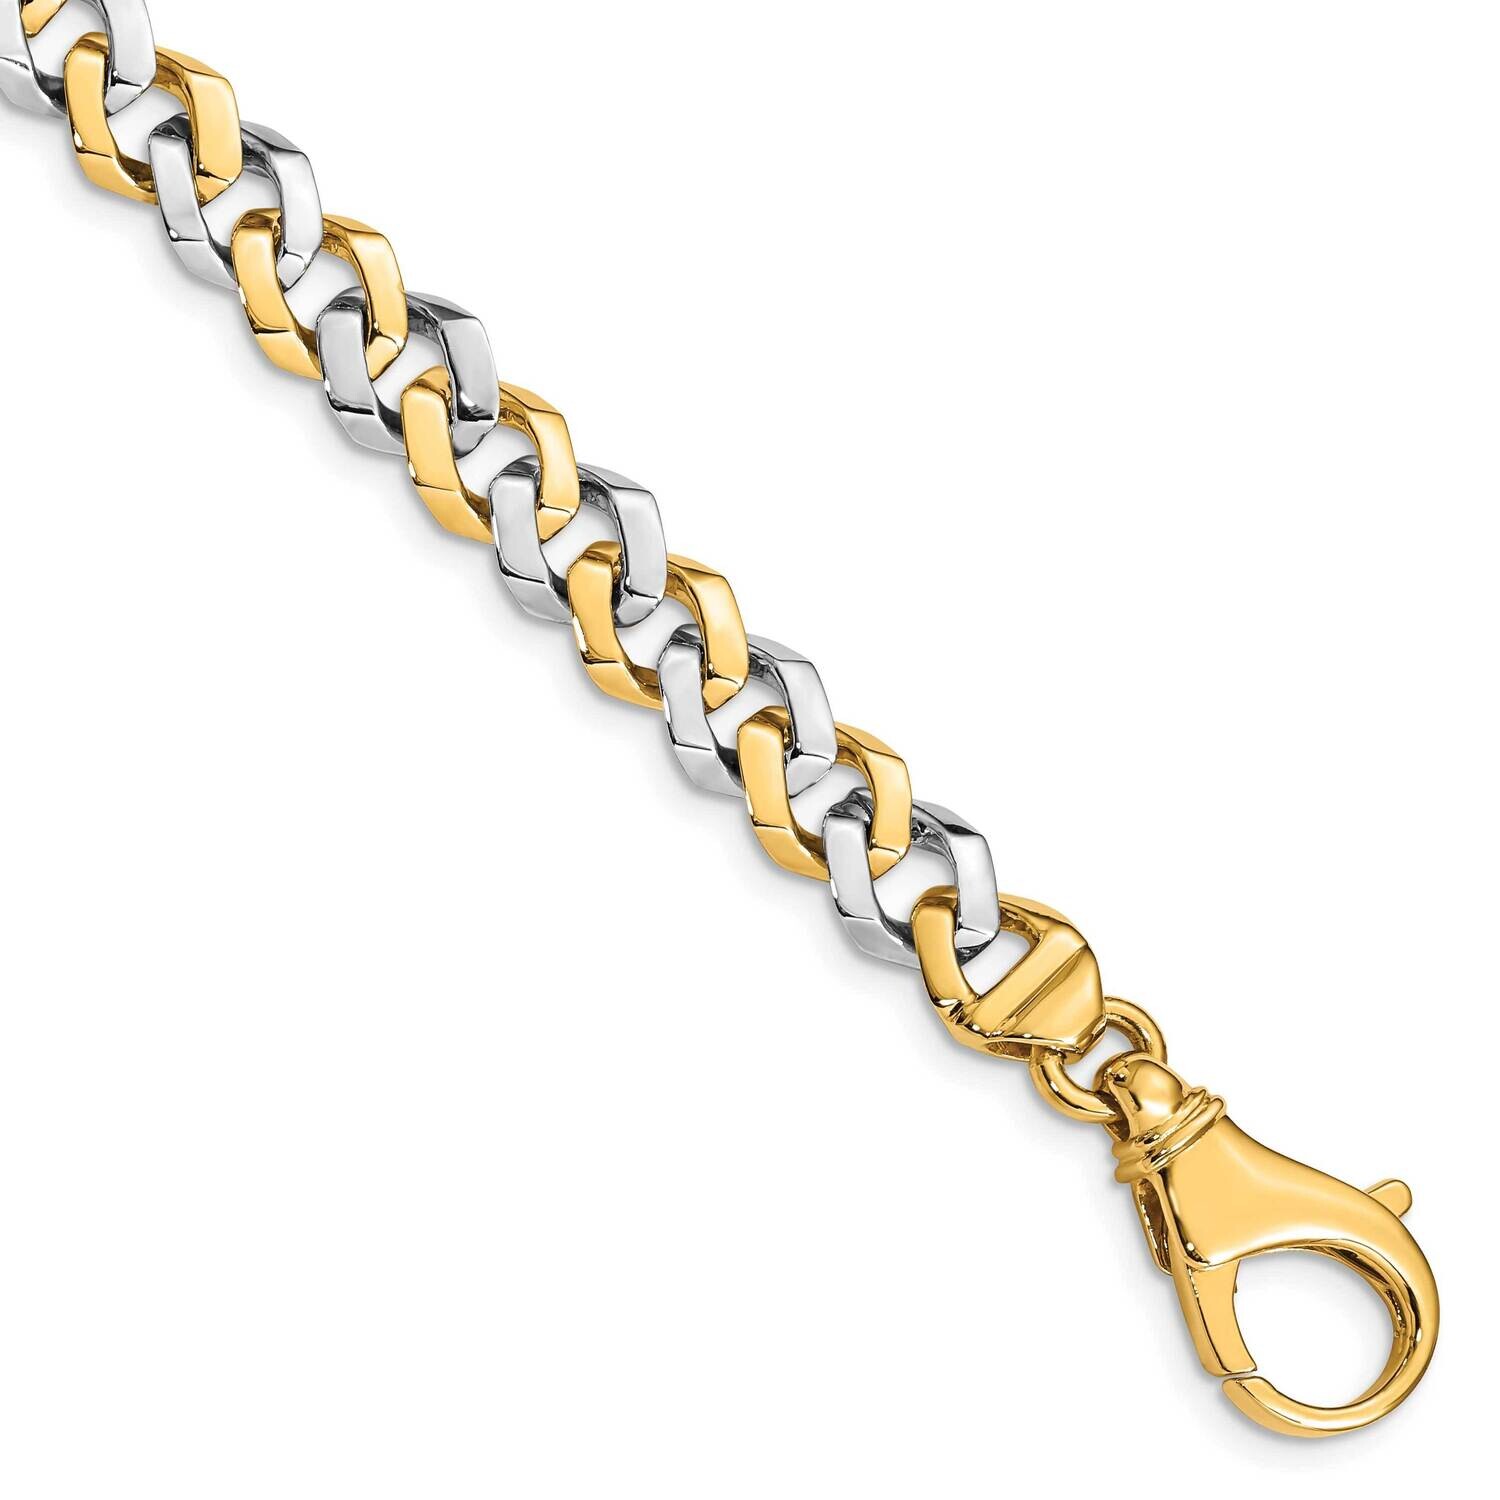 8mm Hand-Polished Fancy Link Bracelet 8 Inch 10k Two-Tone Gold 10LK515-8